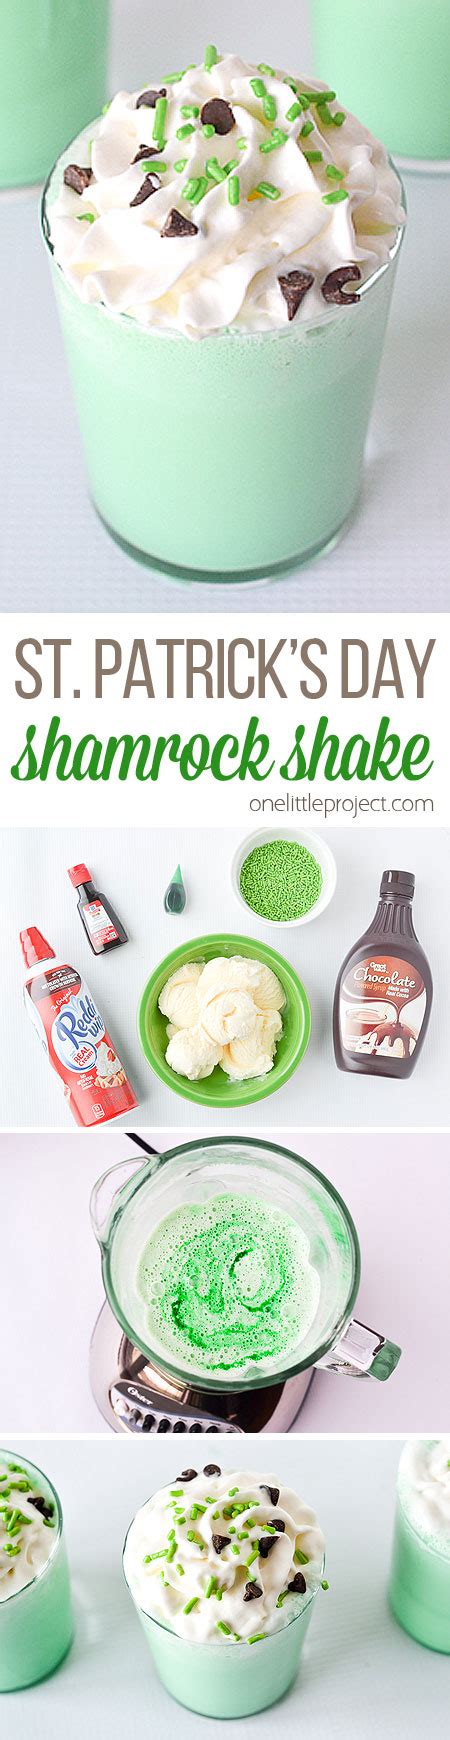 shamrock-shake-recipe-mcdonalds-copycat image